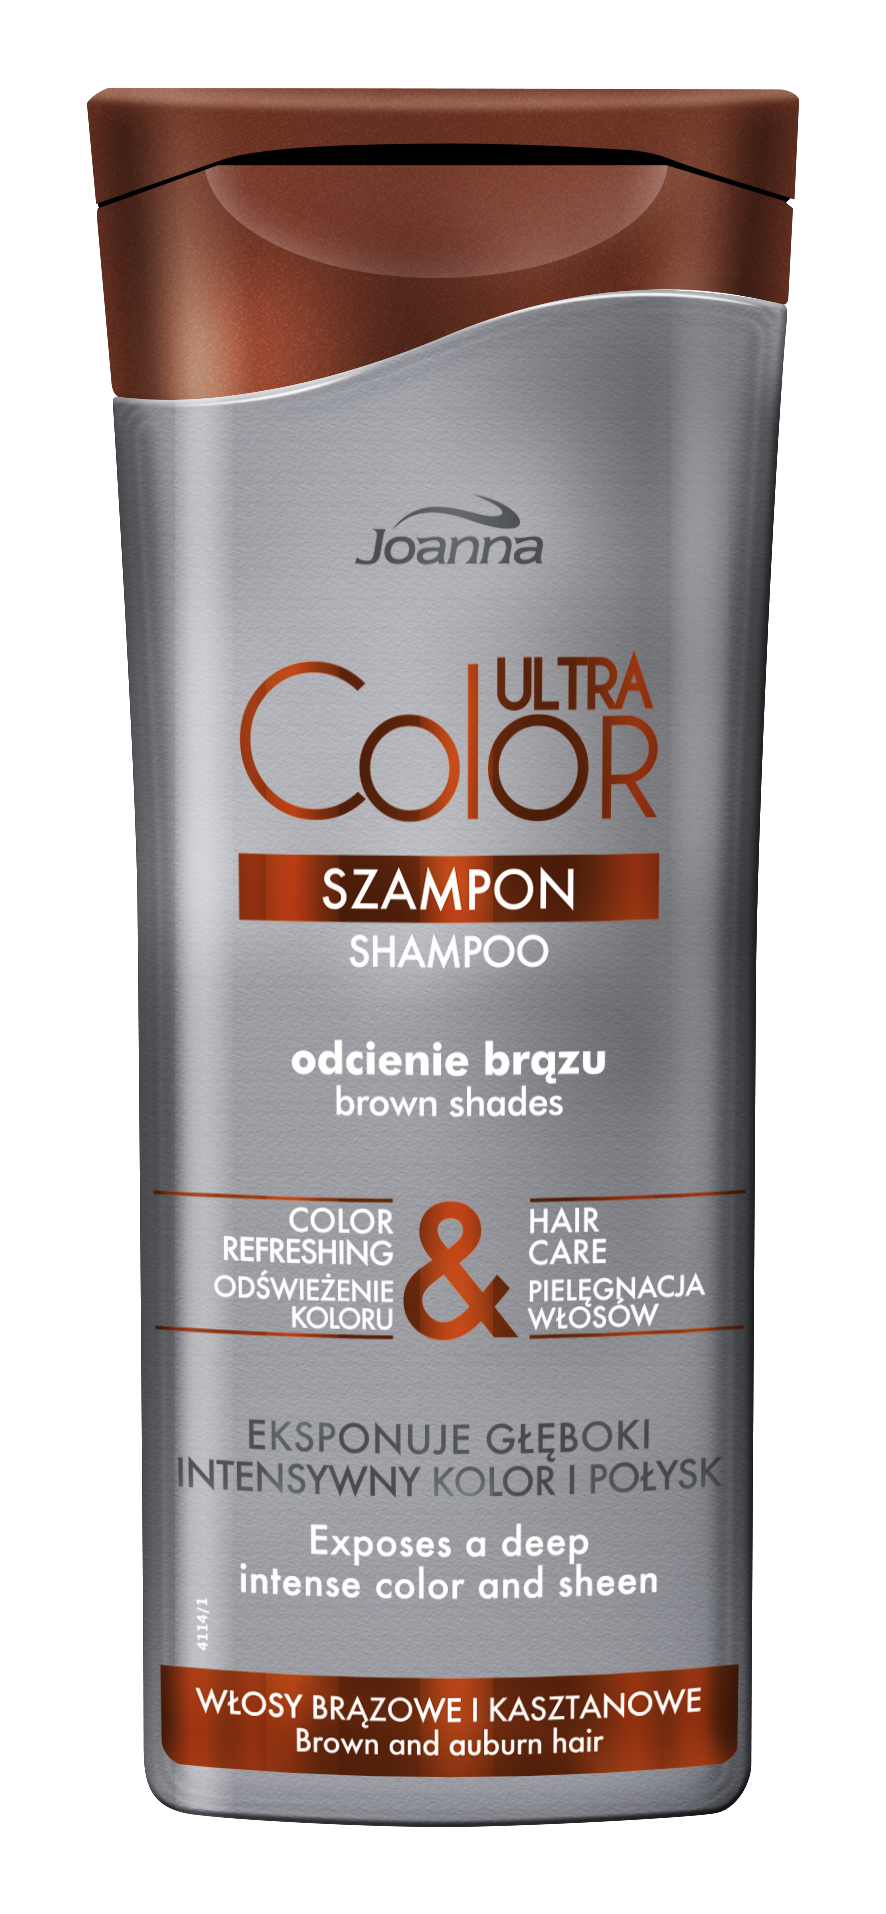 ochłodzenie brązowych włosów szampon joanna